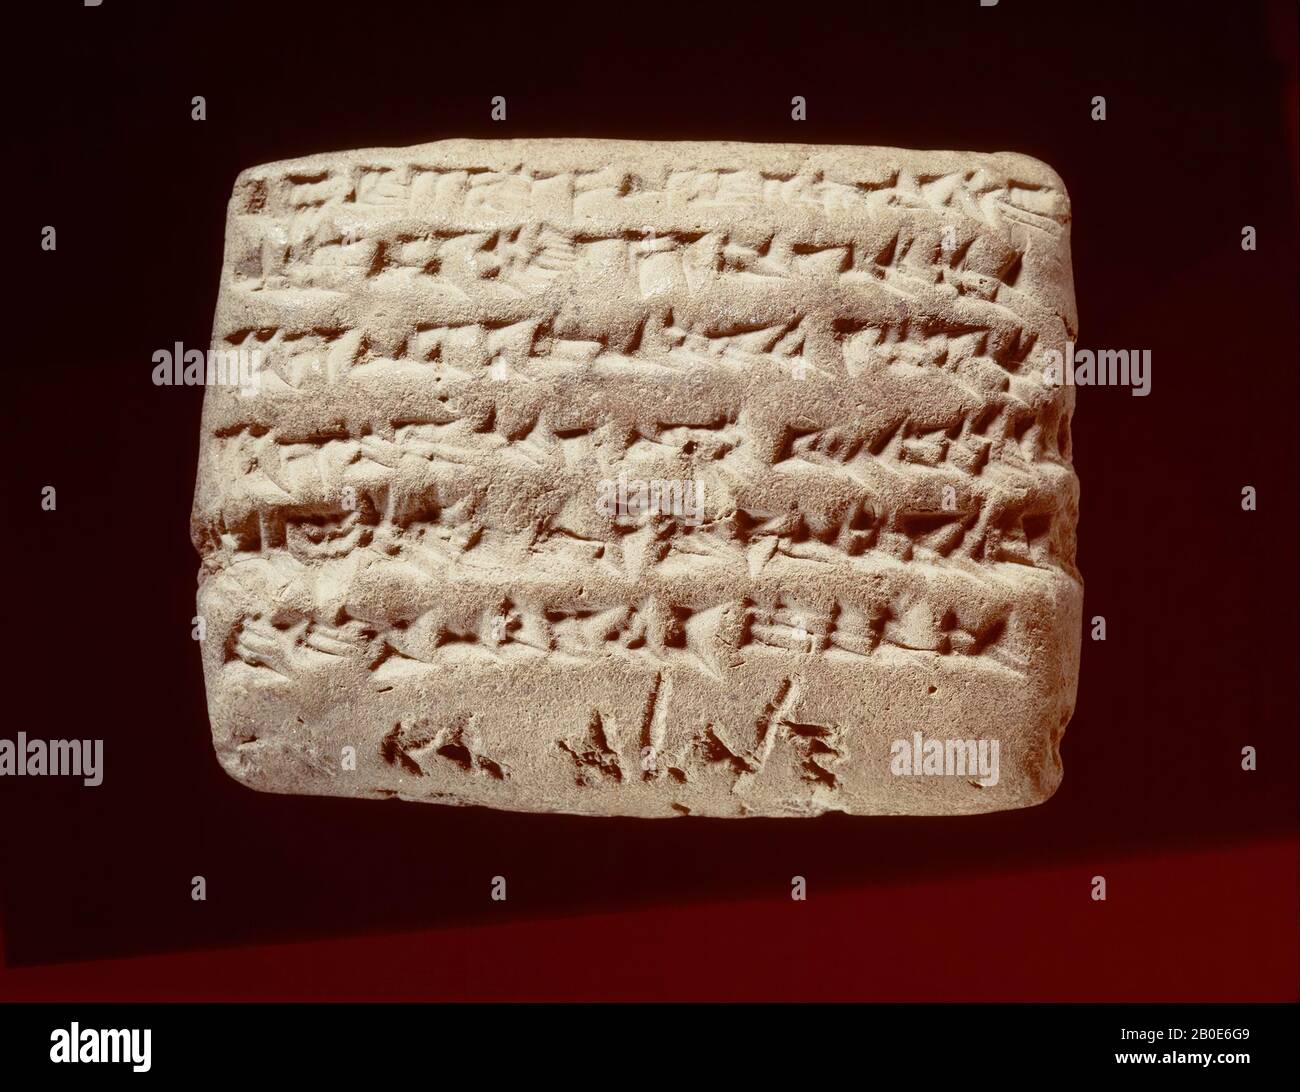 Una tavoletta di argilla con un'iscrizione cuneiforme e una didascalia aramaica. Il testo è una carta di Sippar con una rivendicazione di 15 sicli d'argento, accusato ad un certo figlio di Bel-iddina di Nabu-etir-napsjati, dal 29th anno del re Dario re di Babilonia e re dei paesi (492 a.C.). Sul bordo inferiore della compressa è incisa una didascalia, in corsivo aramaico scrittura incisa in argilla, con le parole Van bel-iddina figlio di Napahai, cioè, il nome del debitore. La graduale introduzione dell'aramaico come lingua del discorso e della scrittura in Mesopotamia, dal 9th secolo a.C., ha guidato, soprattutto in persiano Foto Stock